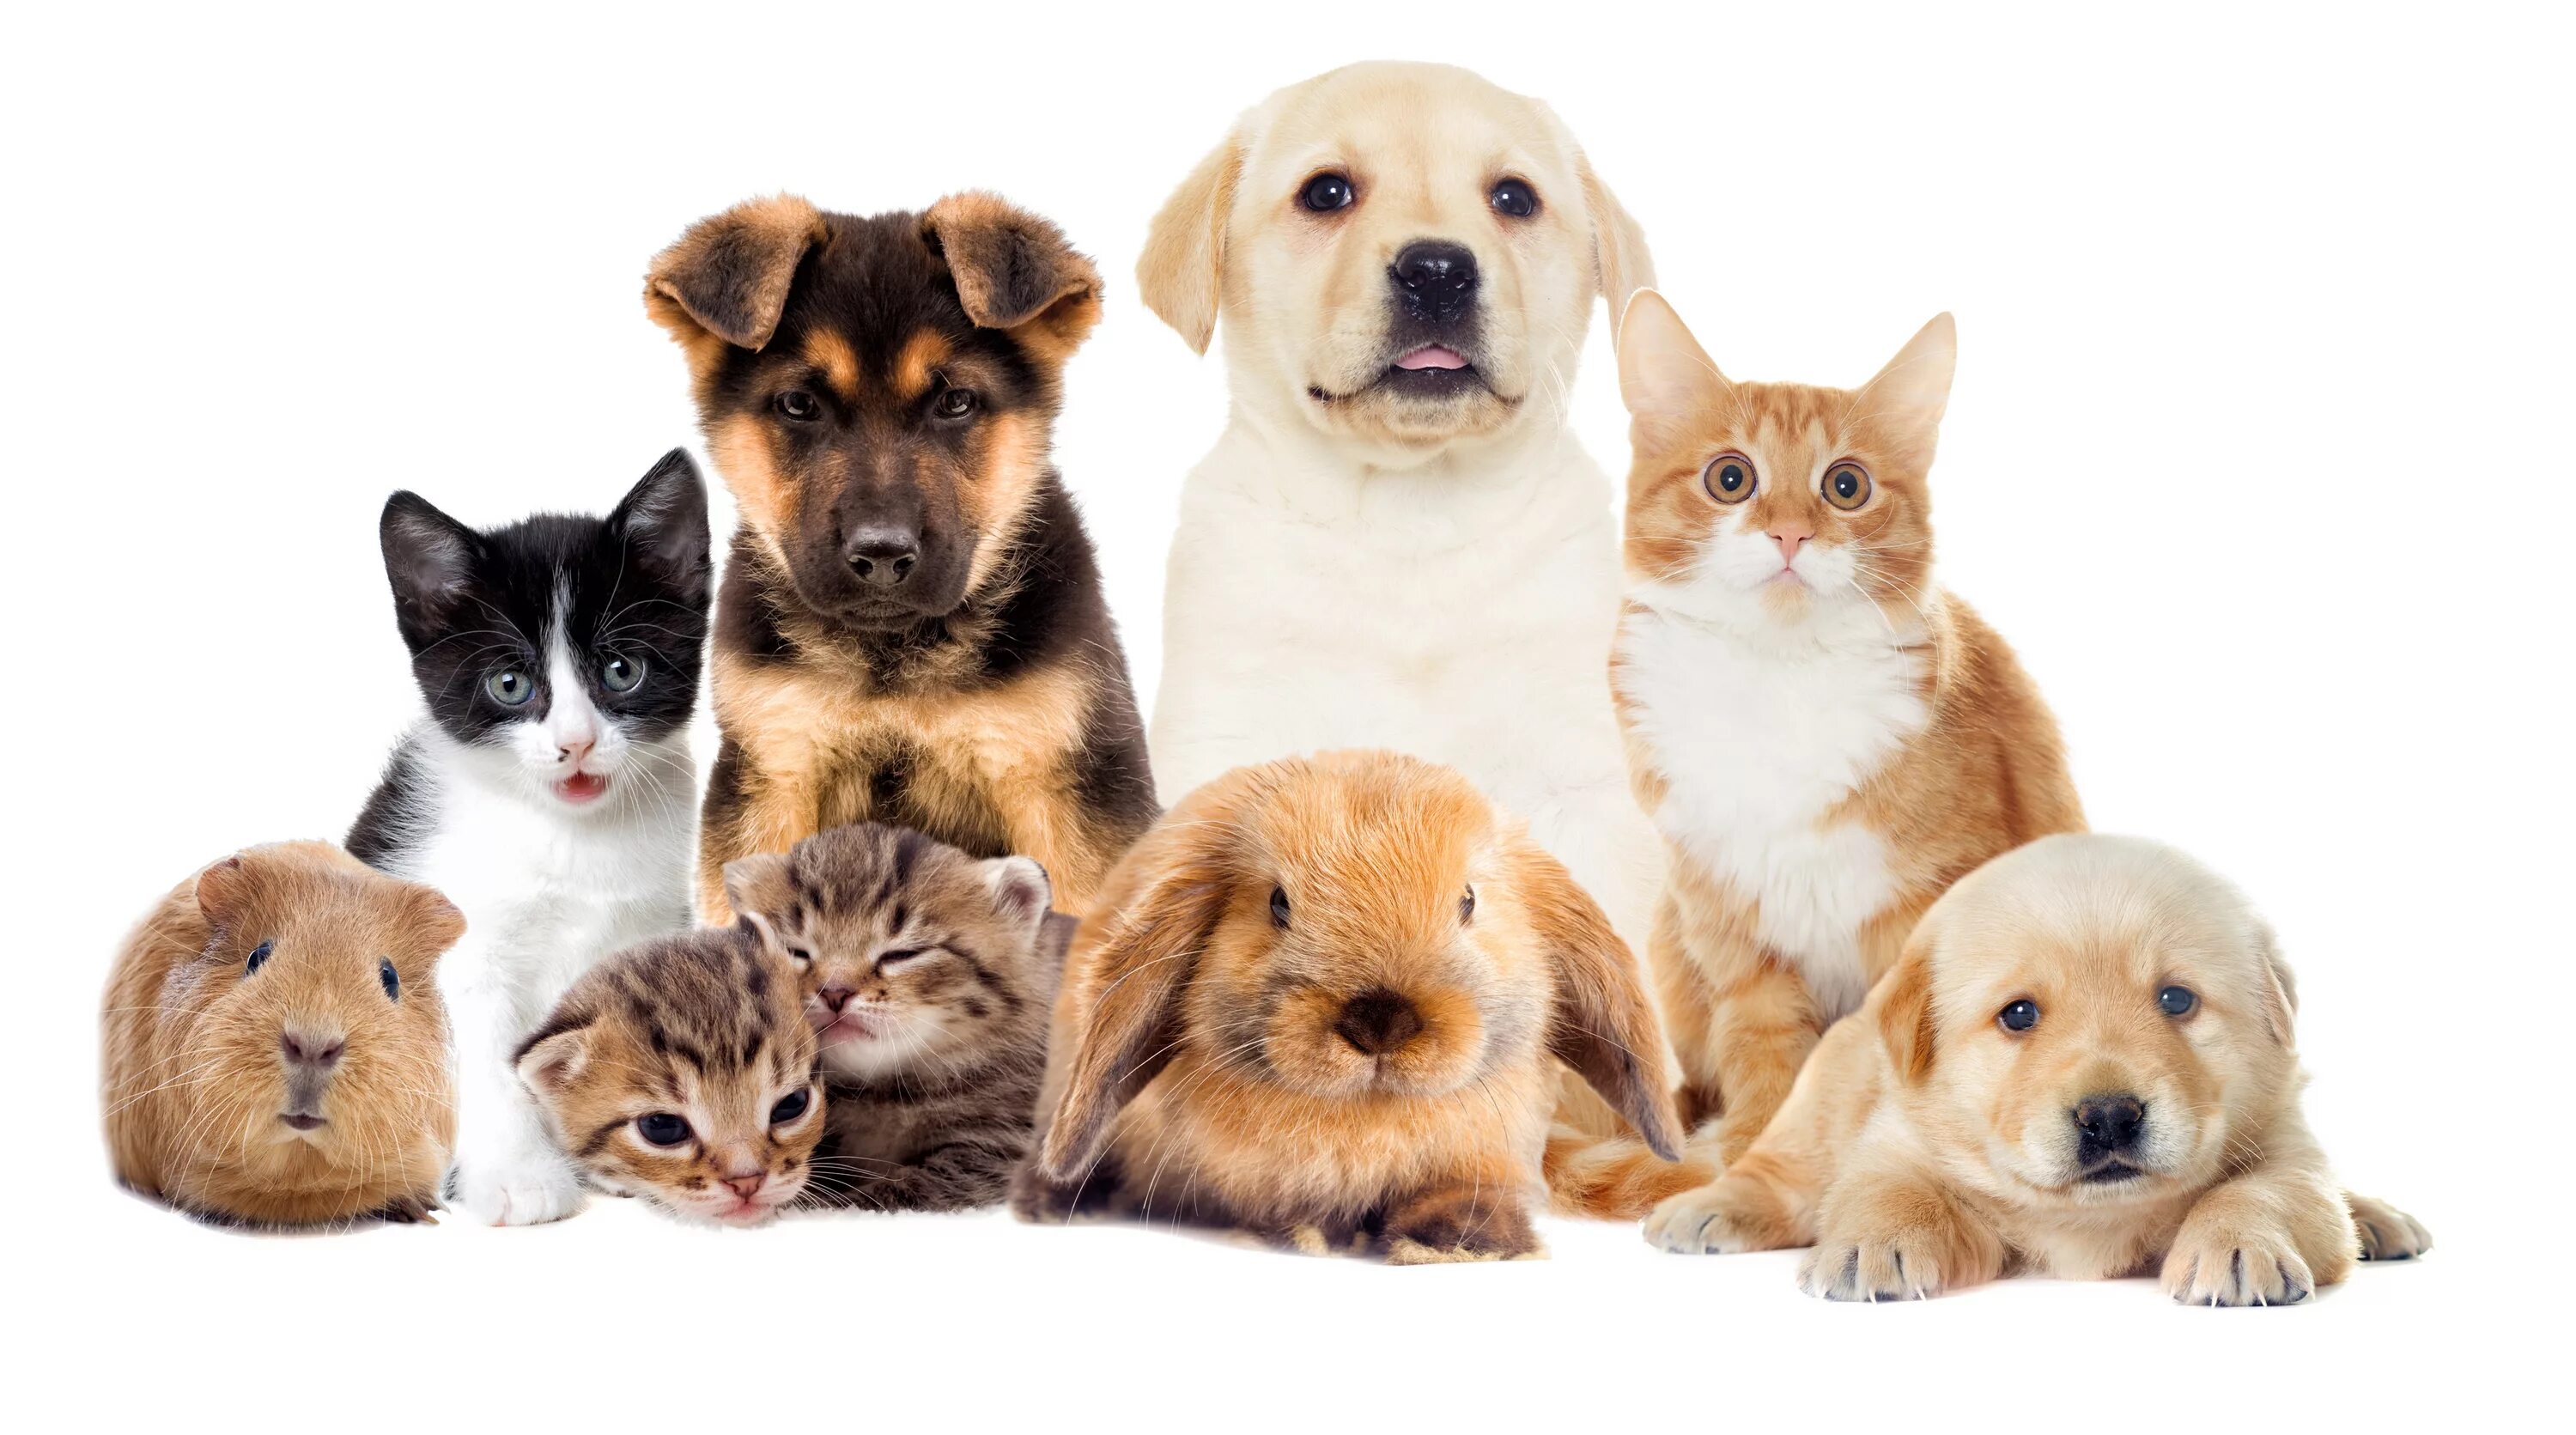 Домашние животные. Кошки и собаки. Много домашних животных. Домашние животные вместе. Pet group